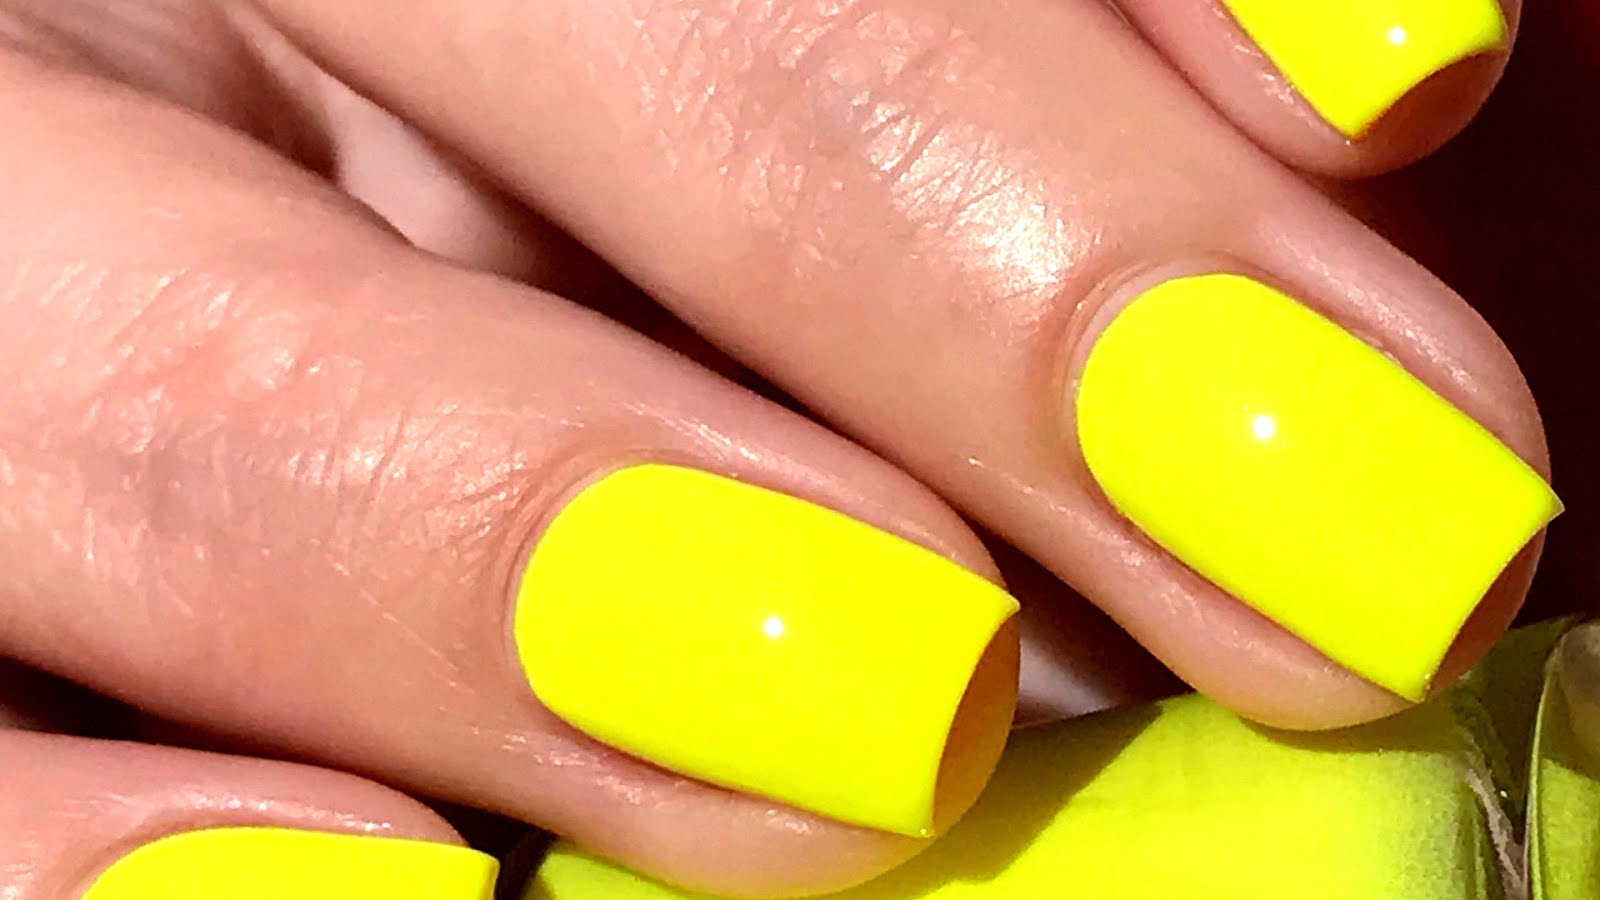 2. Bright Yellow Nail Polish - wide 1